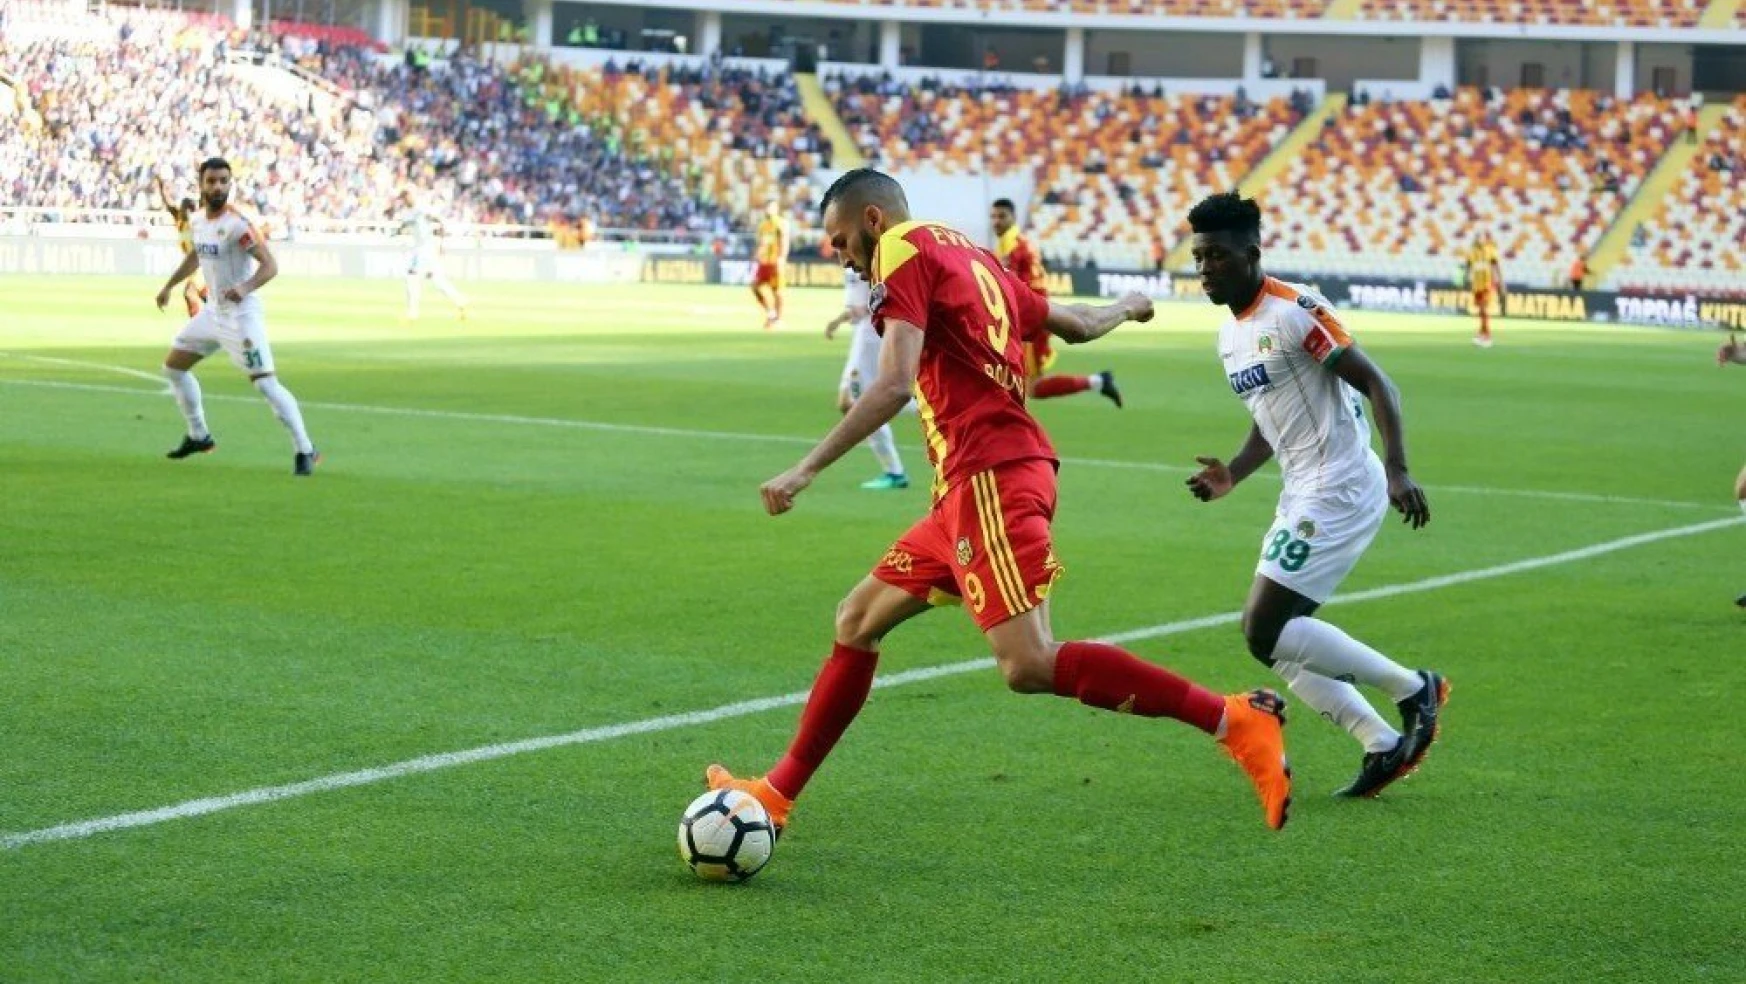 Spor Toto Süper Lig: Evkur Yeni Malatyaspor: 0 - Aytemiz Alanyaspor: 0 (İlk yarı)
